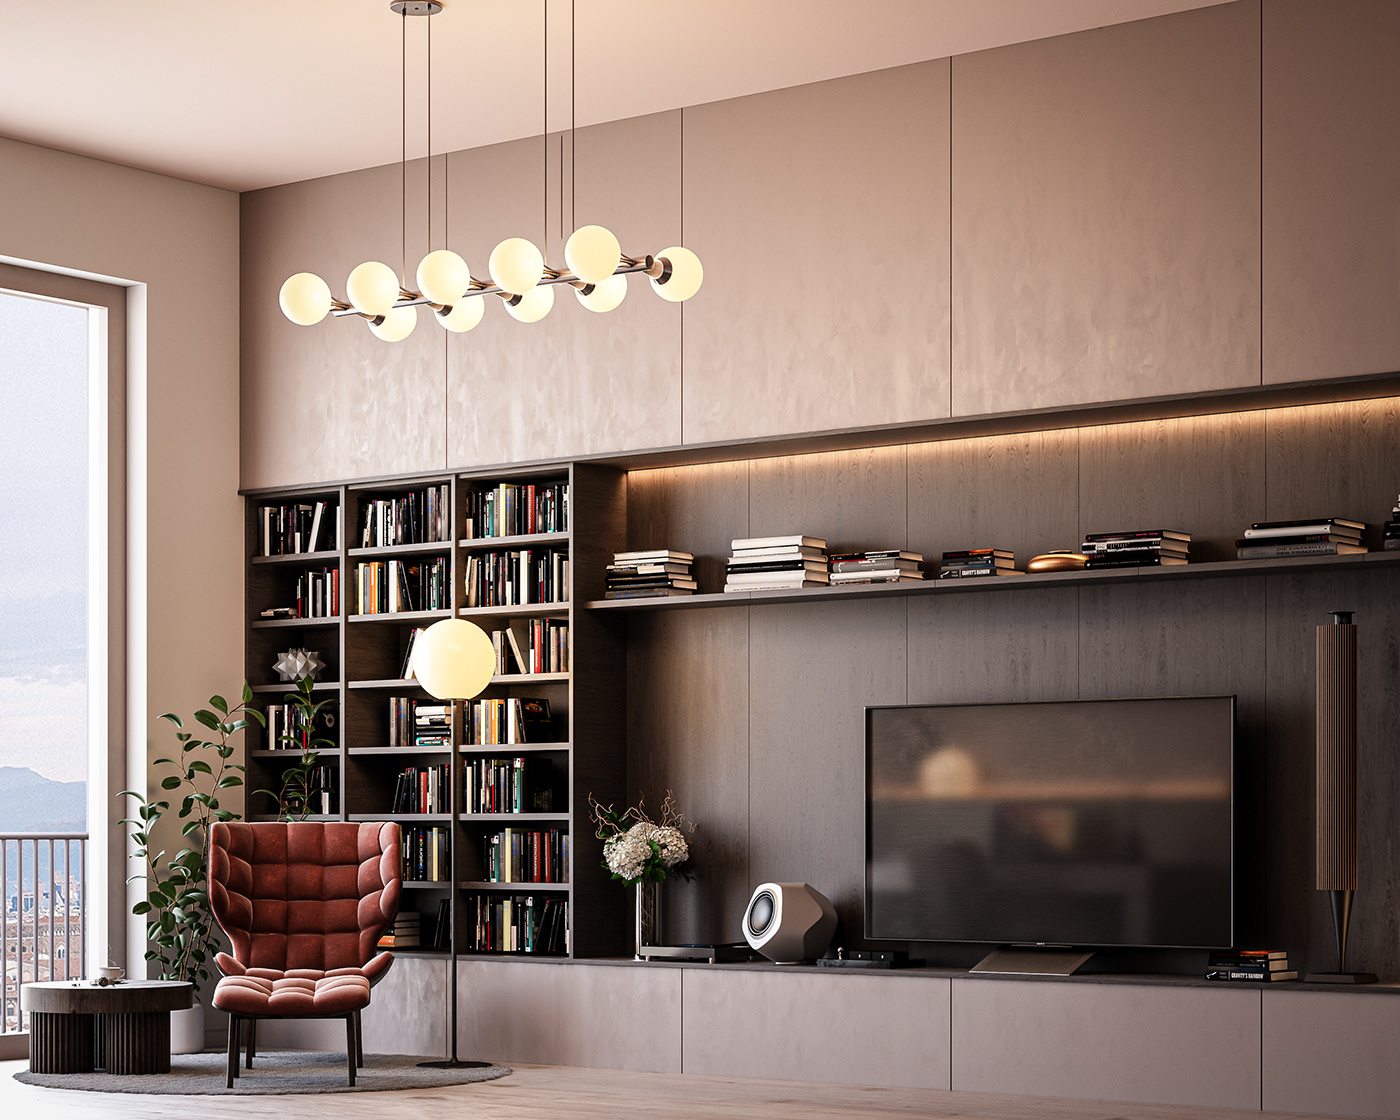 3D architecture design Interior luxurious modern Render visualization